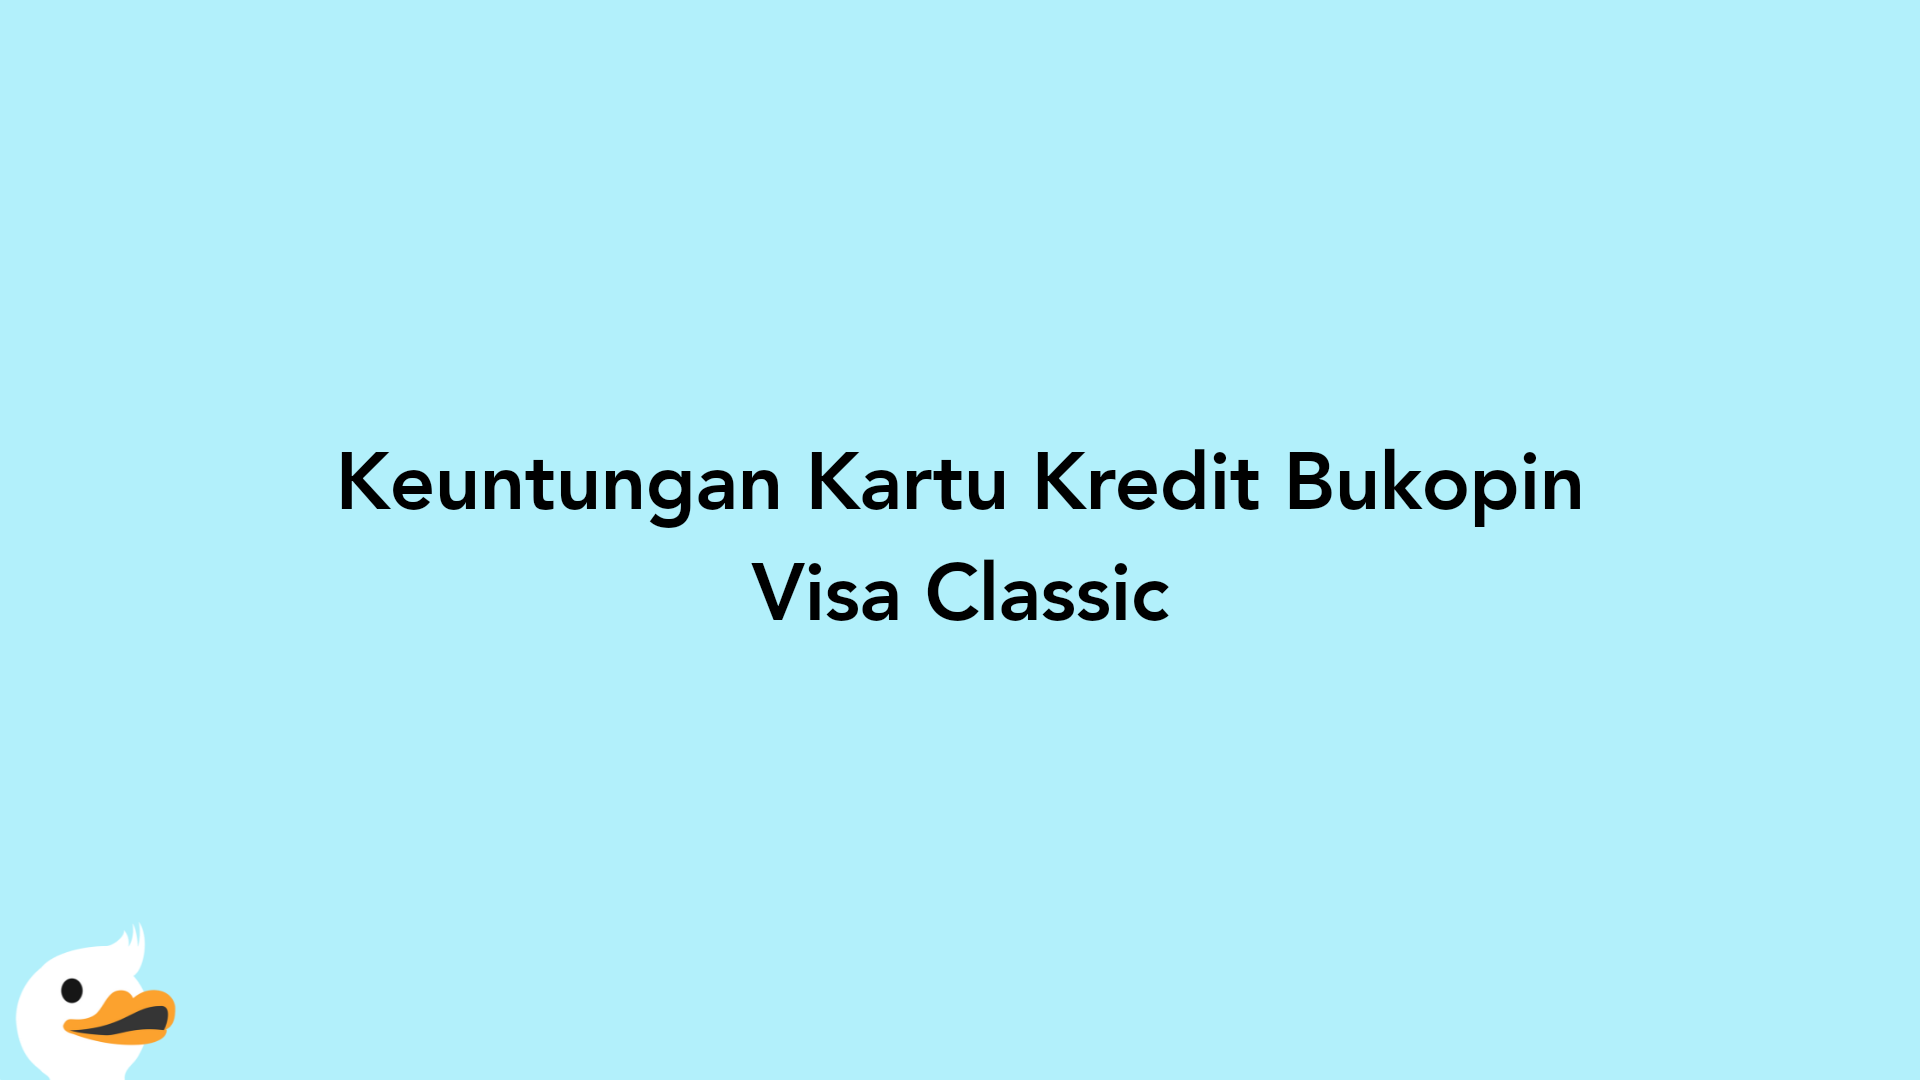 Keuntungan Kartu Kredit Bukopin Visa Classic